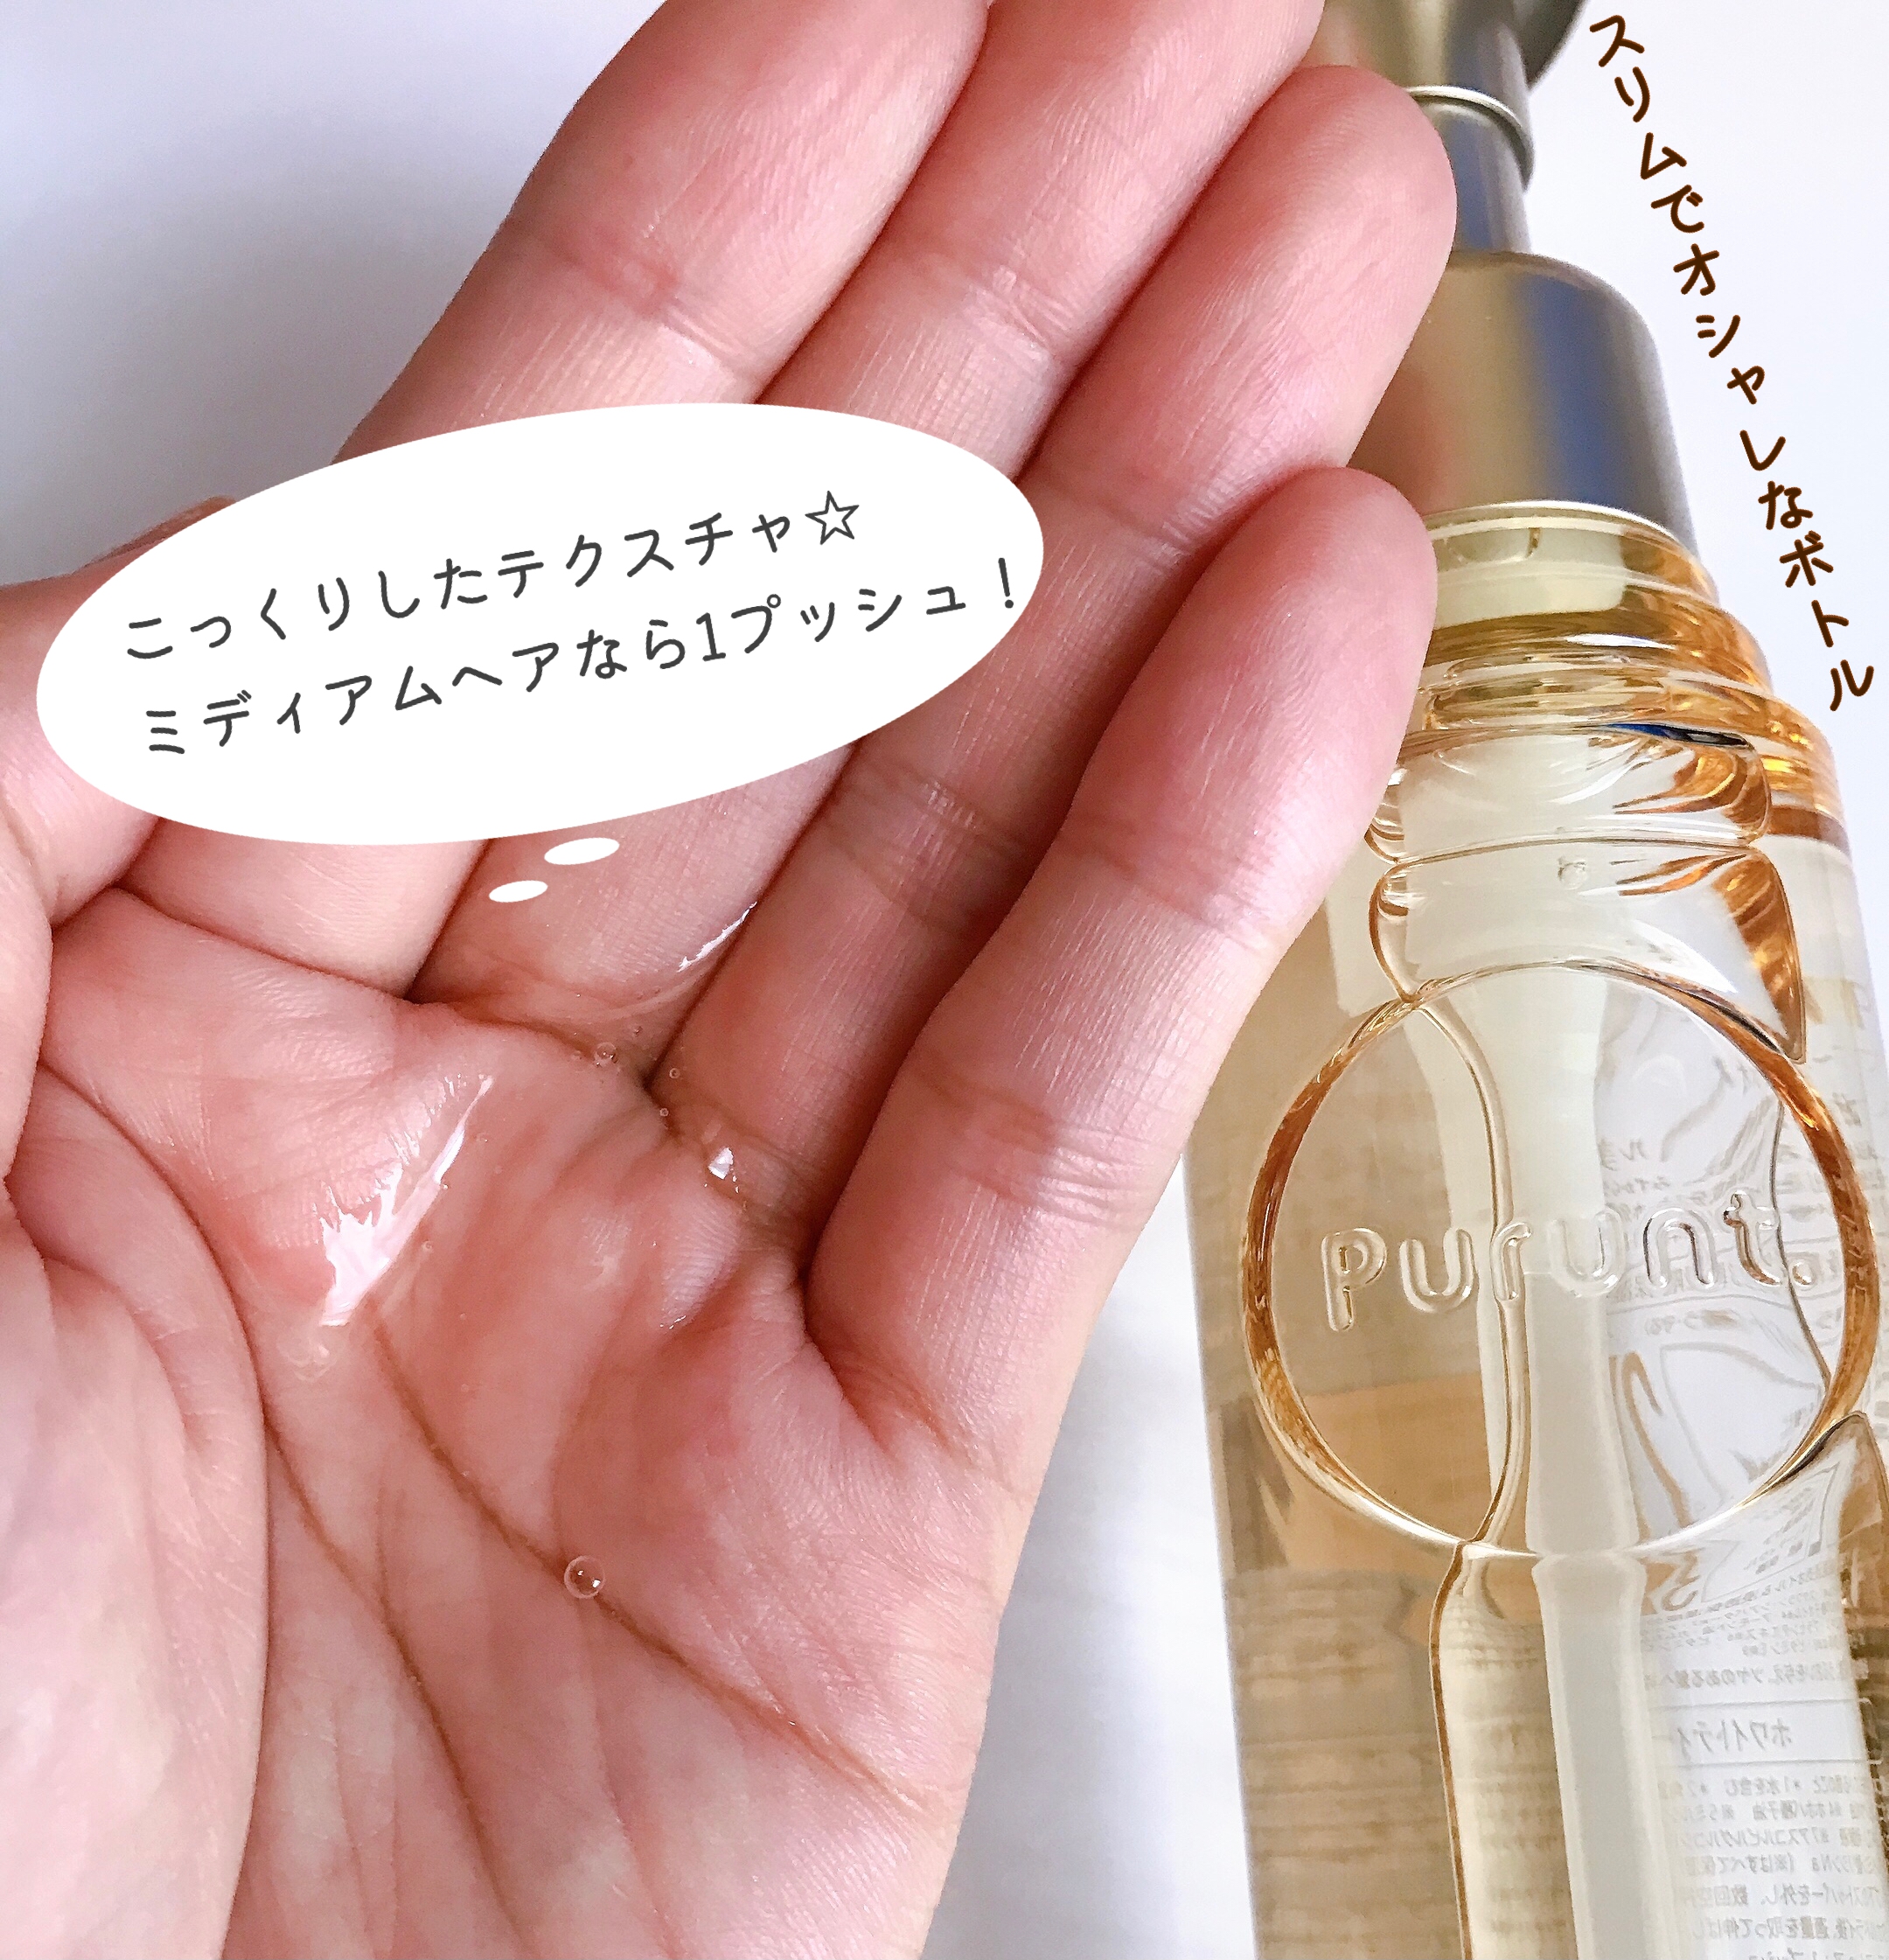 Purunt.(プルント) ディープモイスト美容液ヘアオイルの良い点・メリットに関するMarukoさんの口コミ画像2